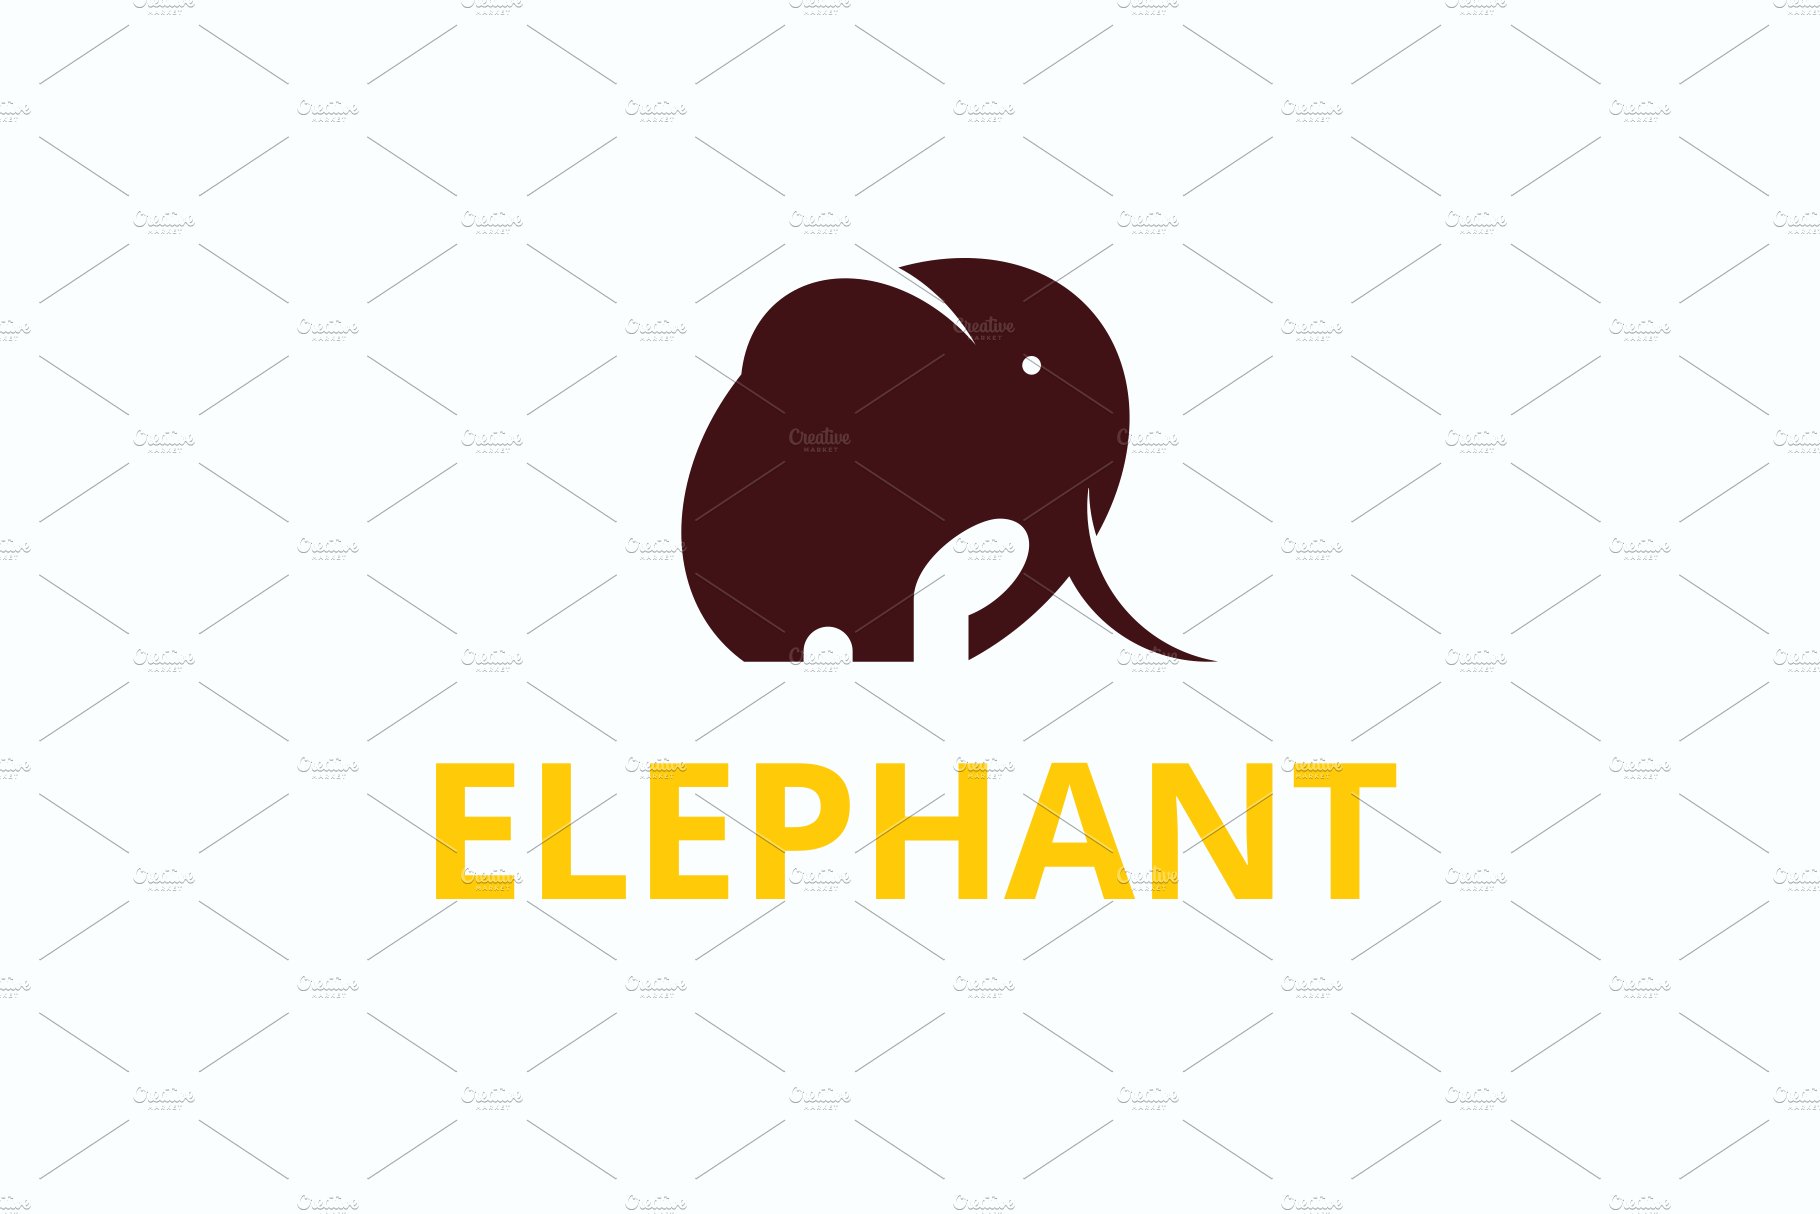 Elephant App Logo cover image.